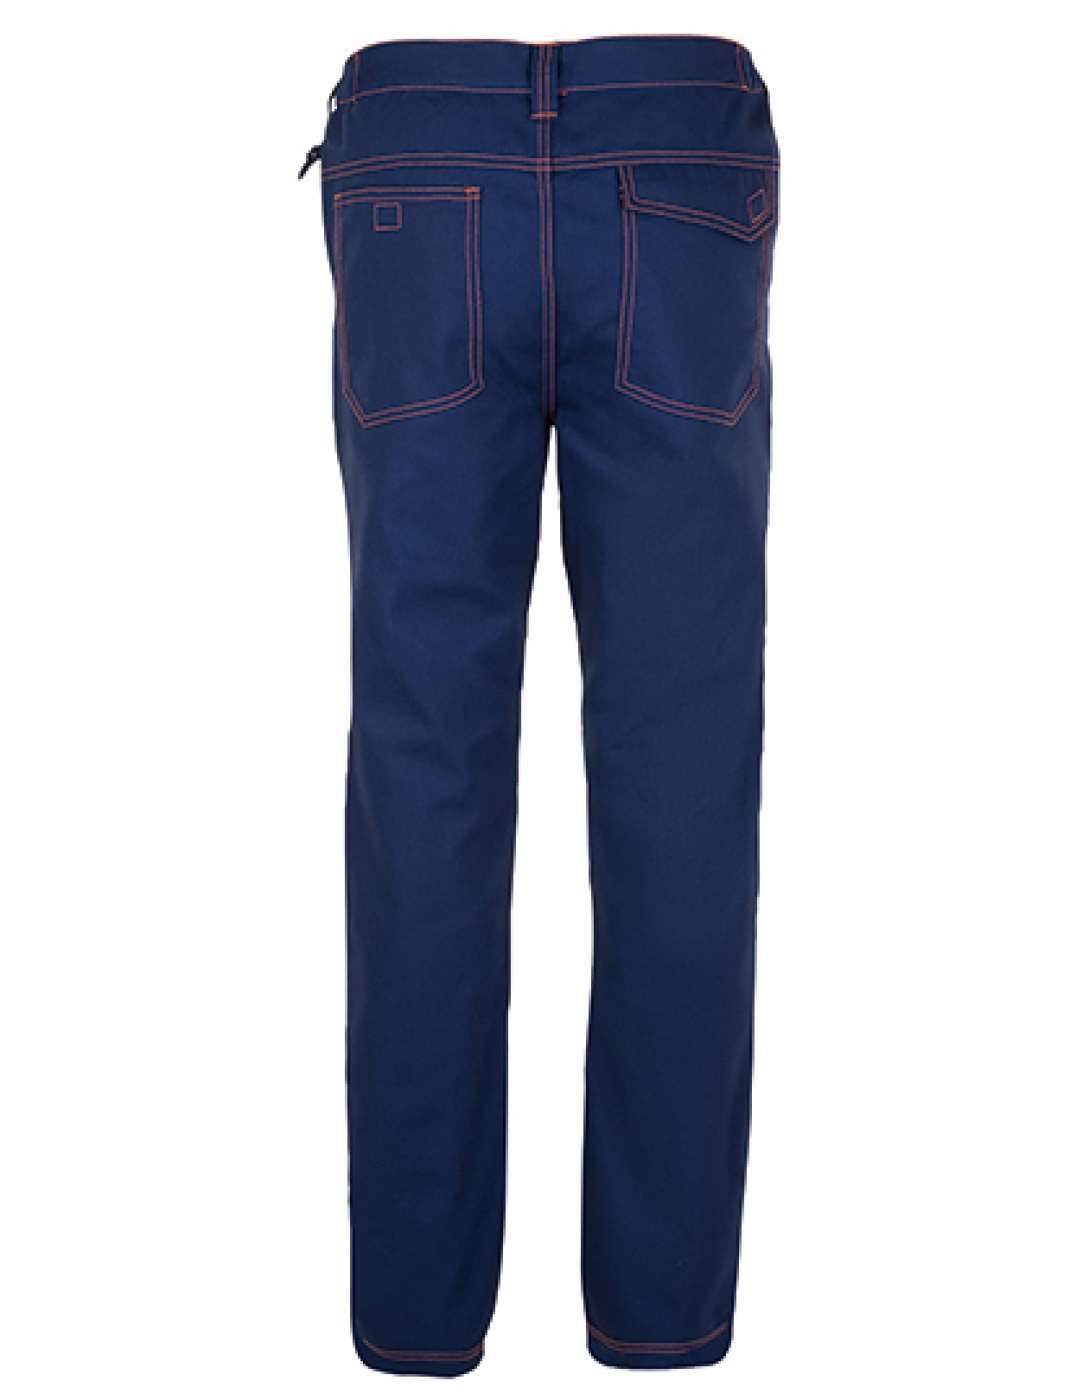 Uniforme Protectie â€“ Pantalon lucru barbat, tip jeans cu 5 buzunare din tercot